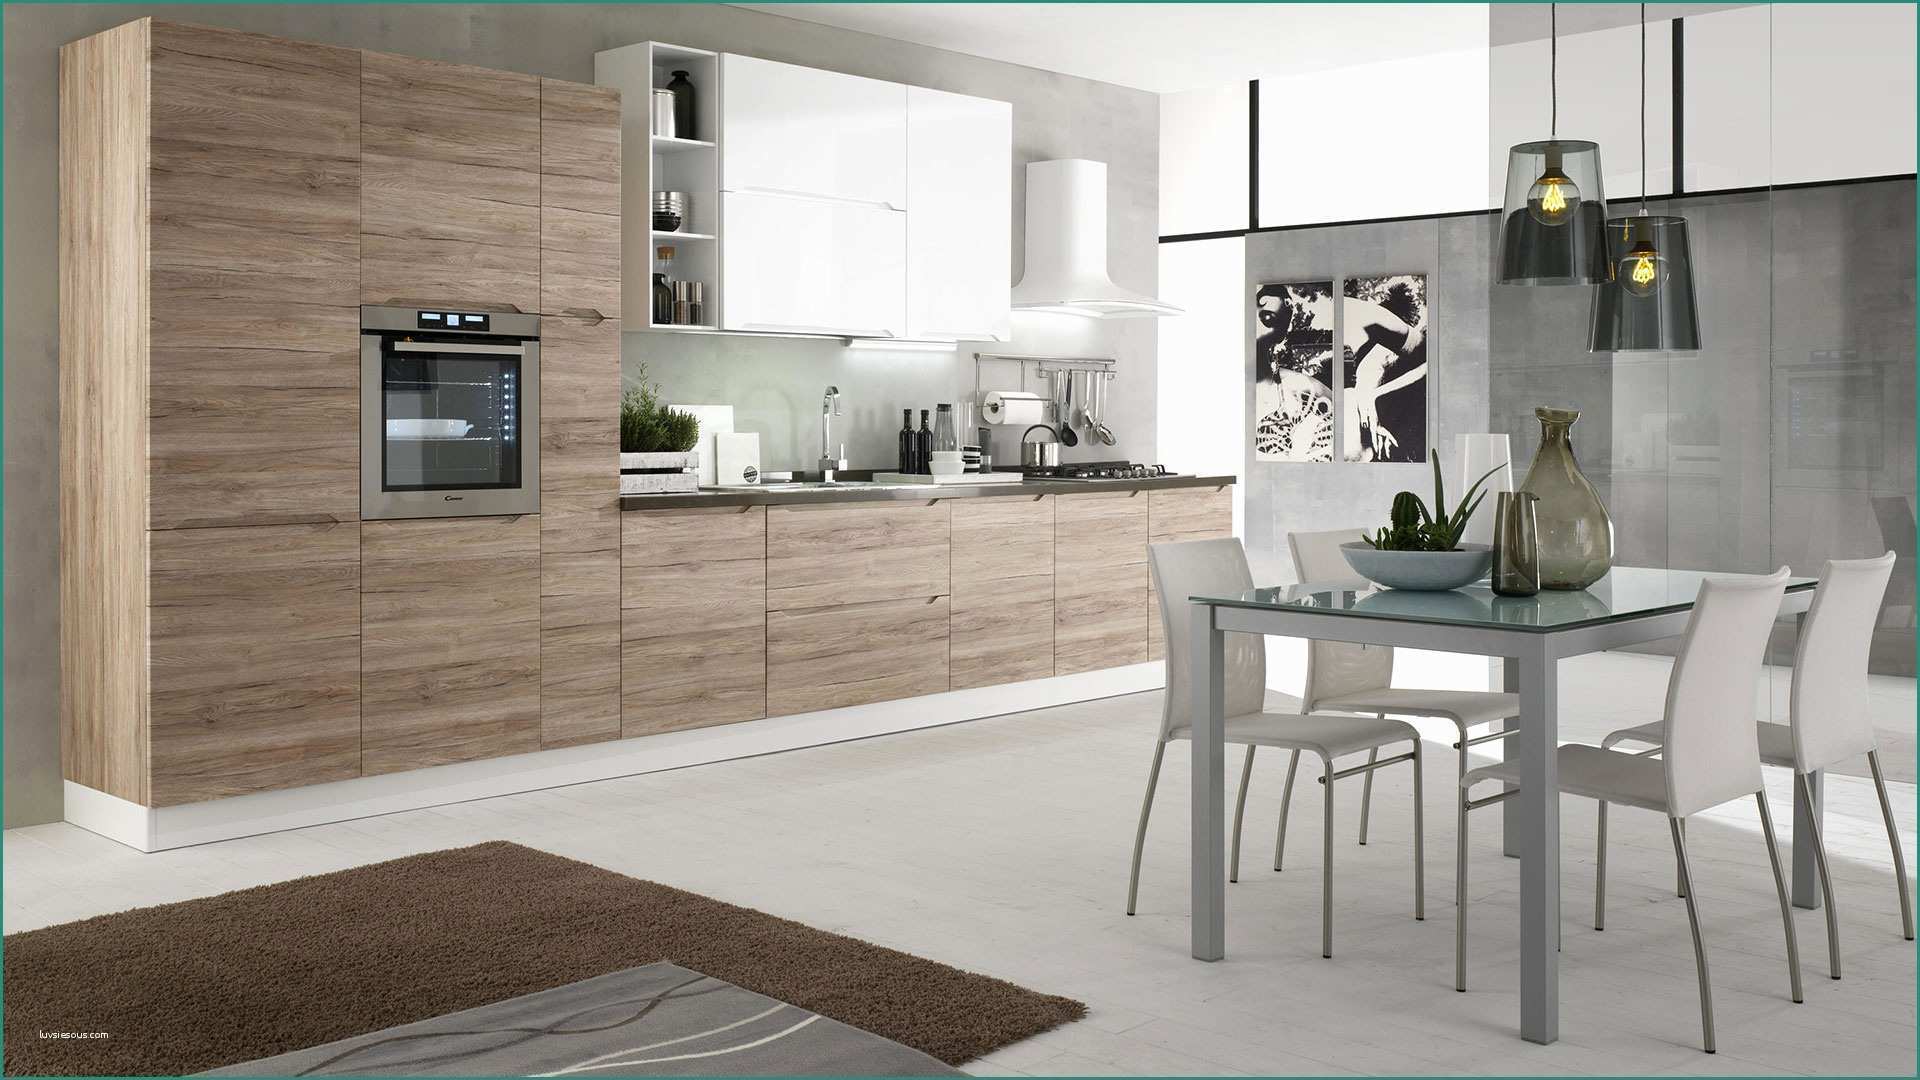 Arrex Cucine Prezzi E Immagini Di Cucine Moderne Excellent soggiorno Open Space soggiorno